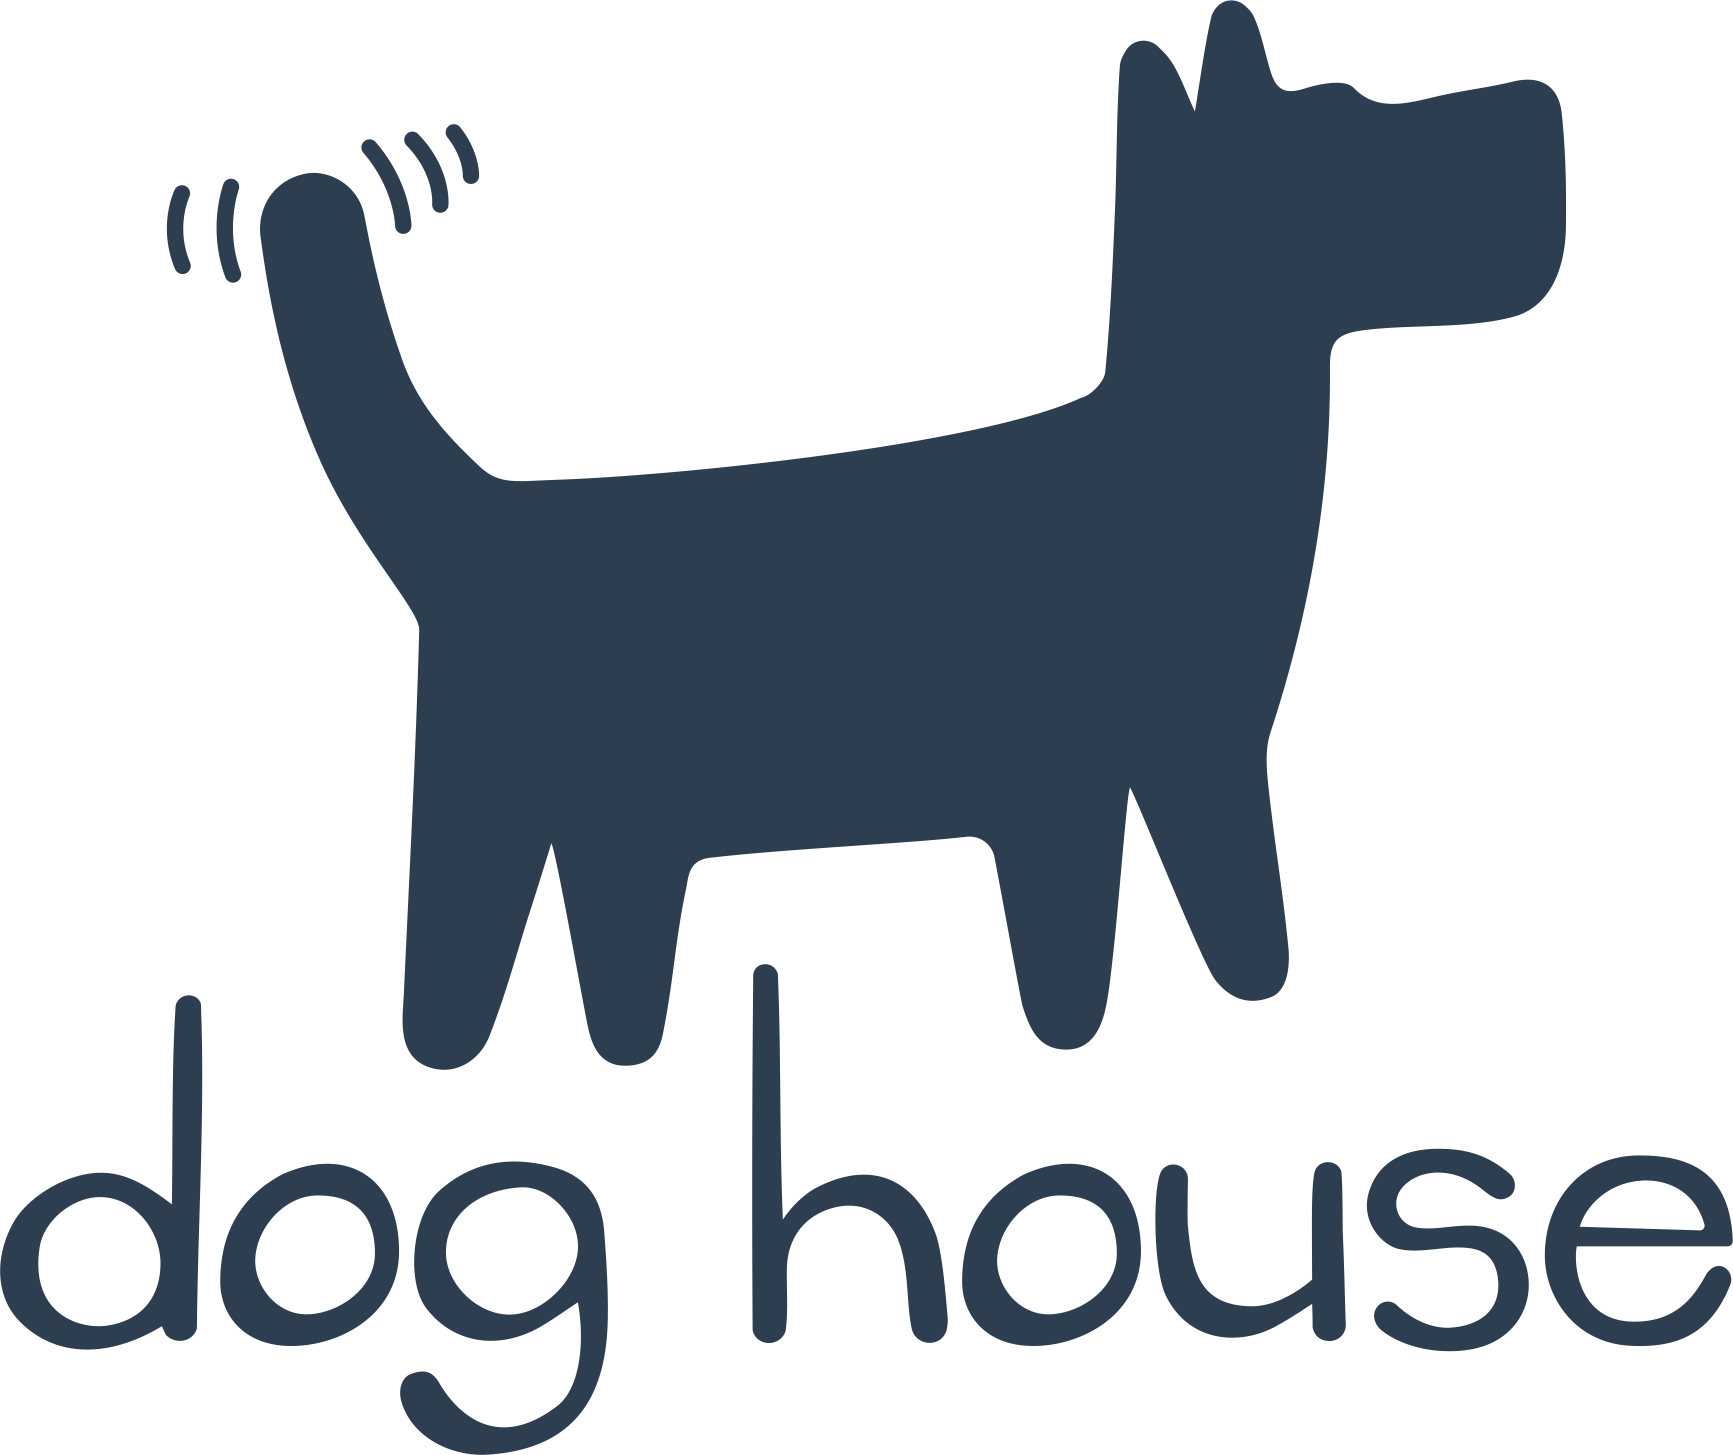 Дог хаус демо dogs house net. Хаус собак. Логотип Dog House. Логотип для хауса собак. Авы для дог хаусов.